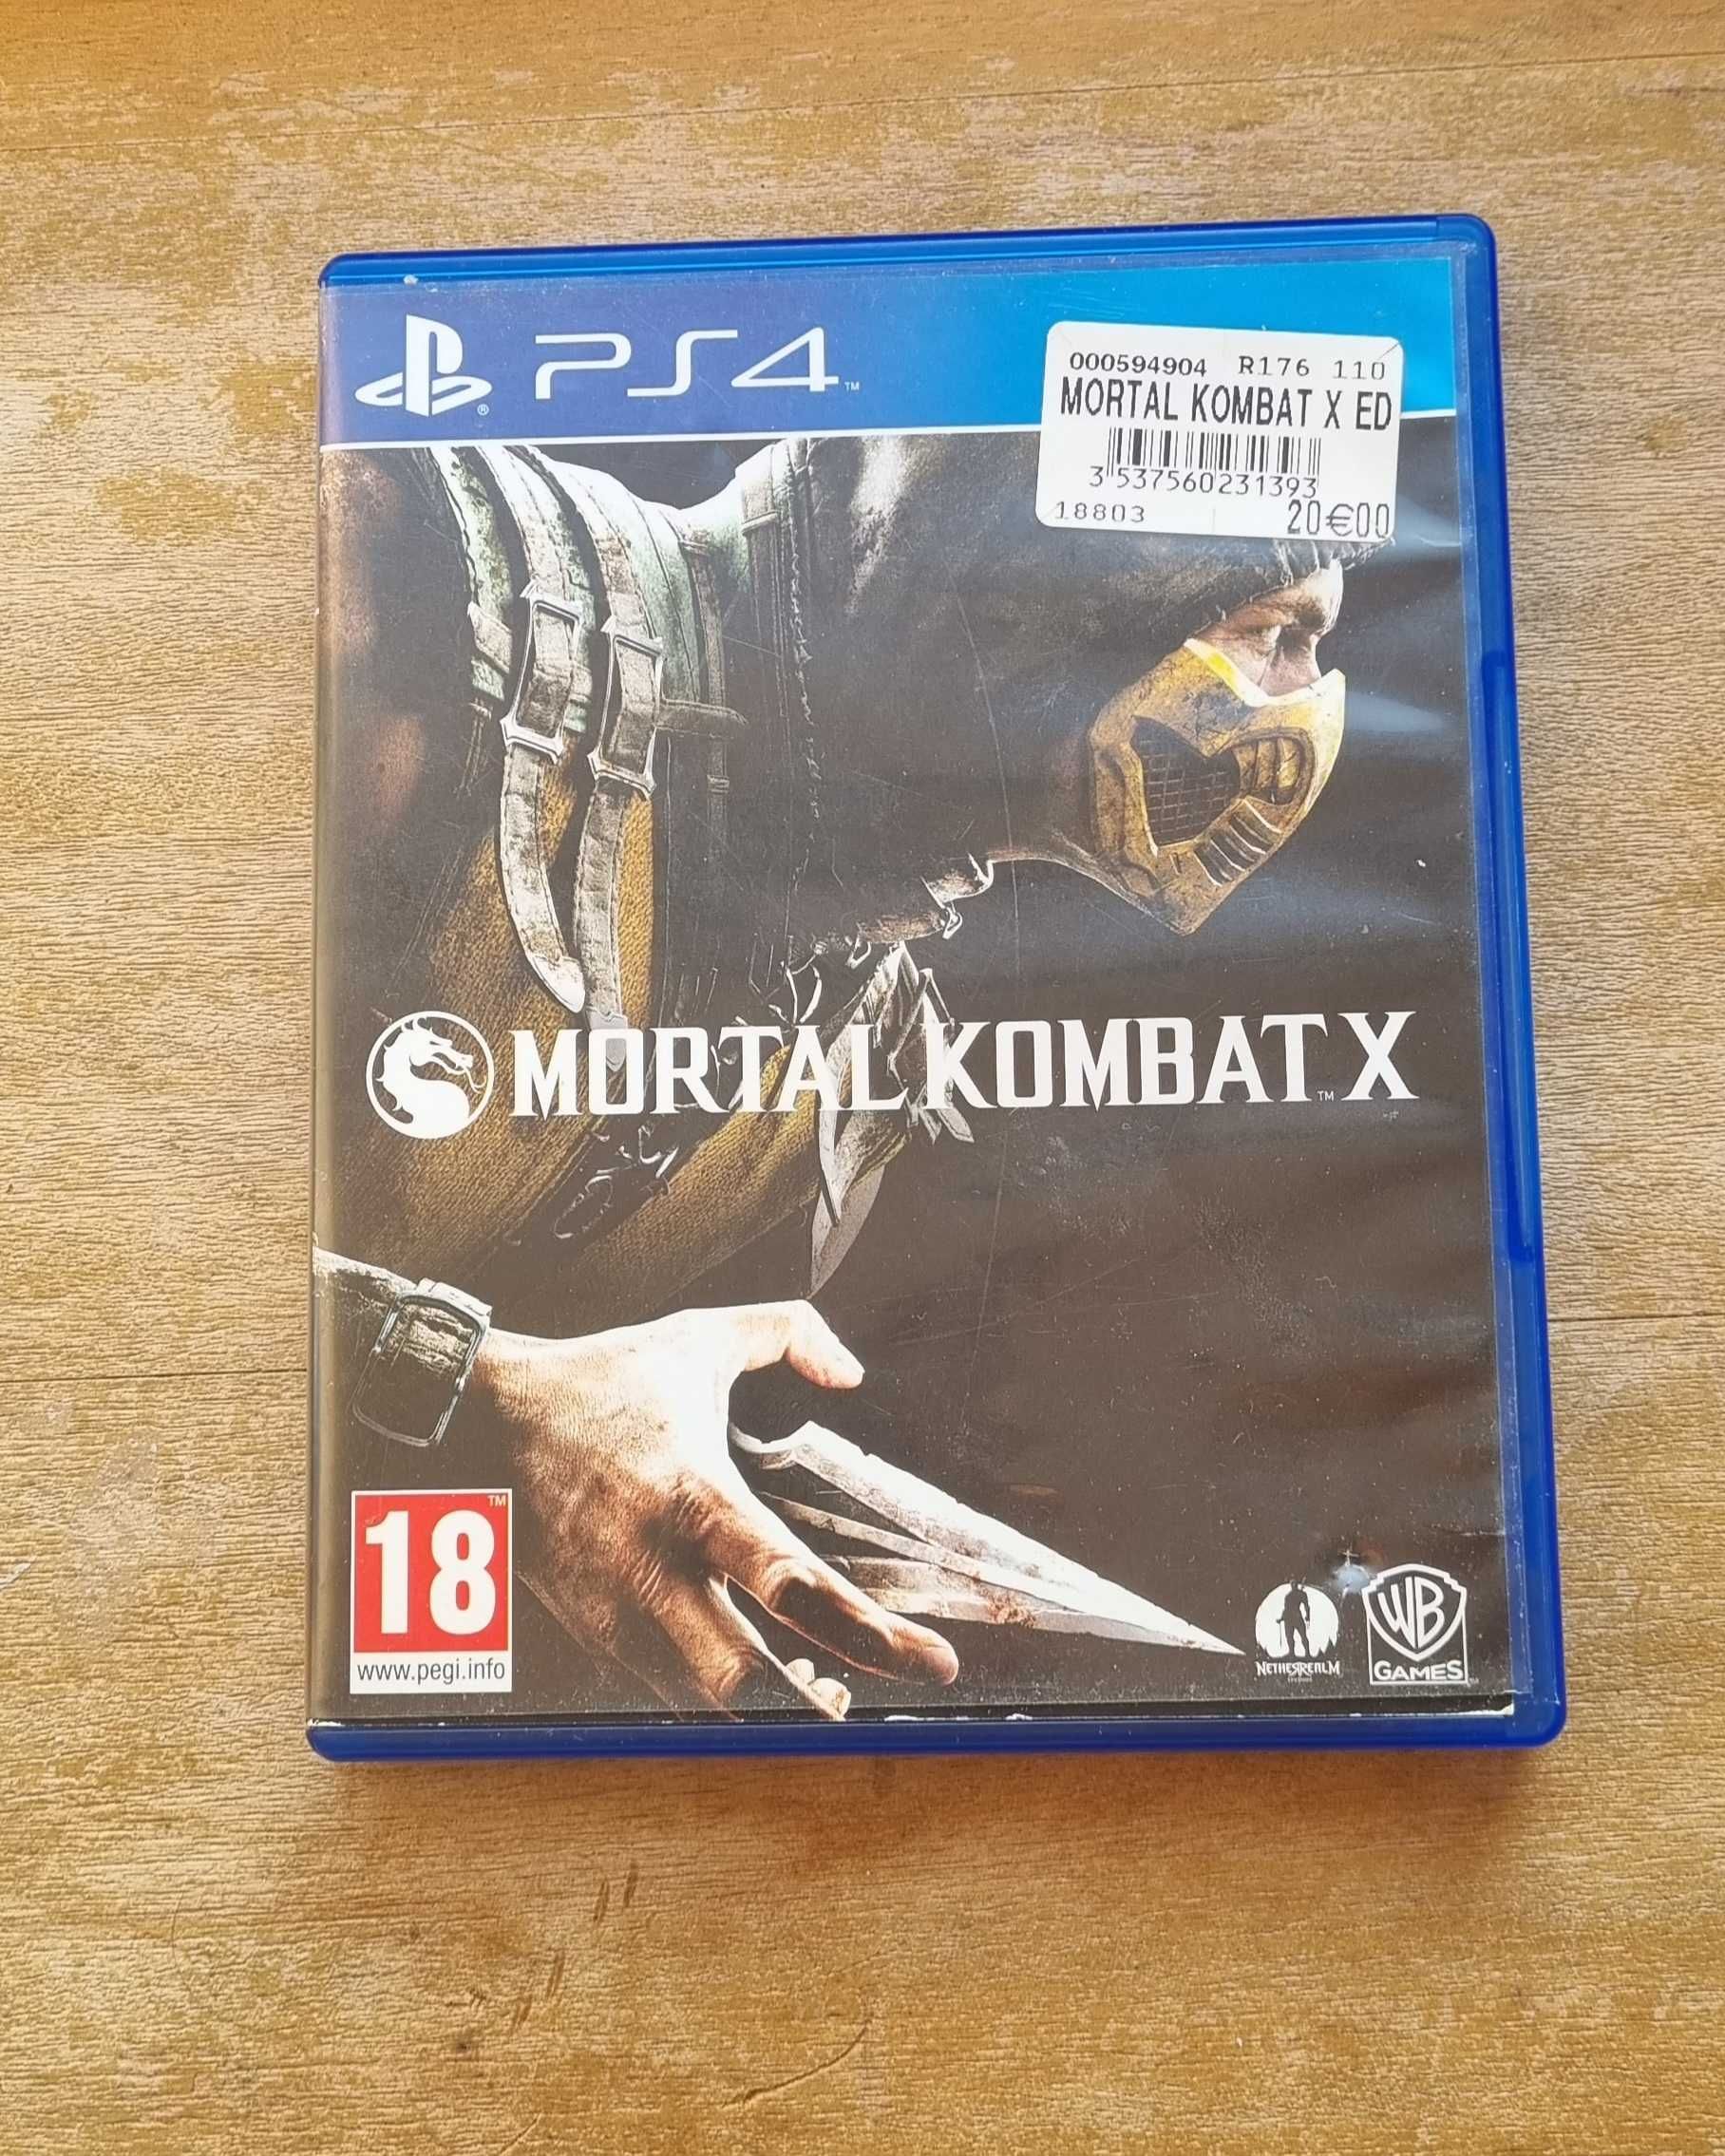 Mortal Kombat x para ps4